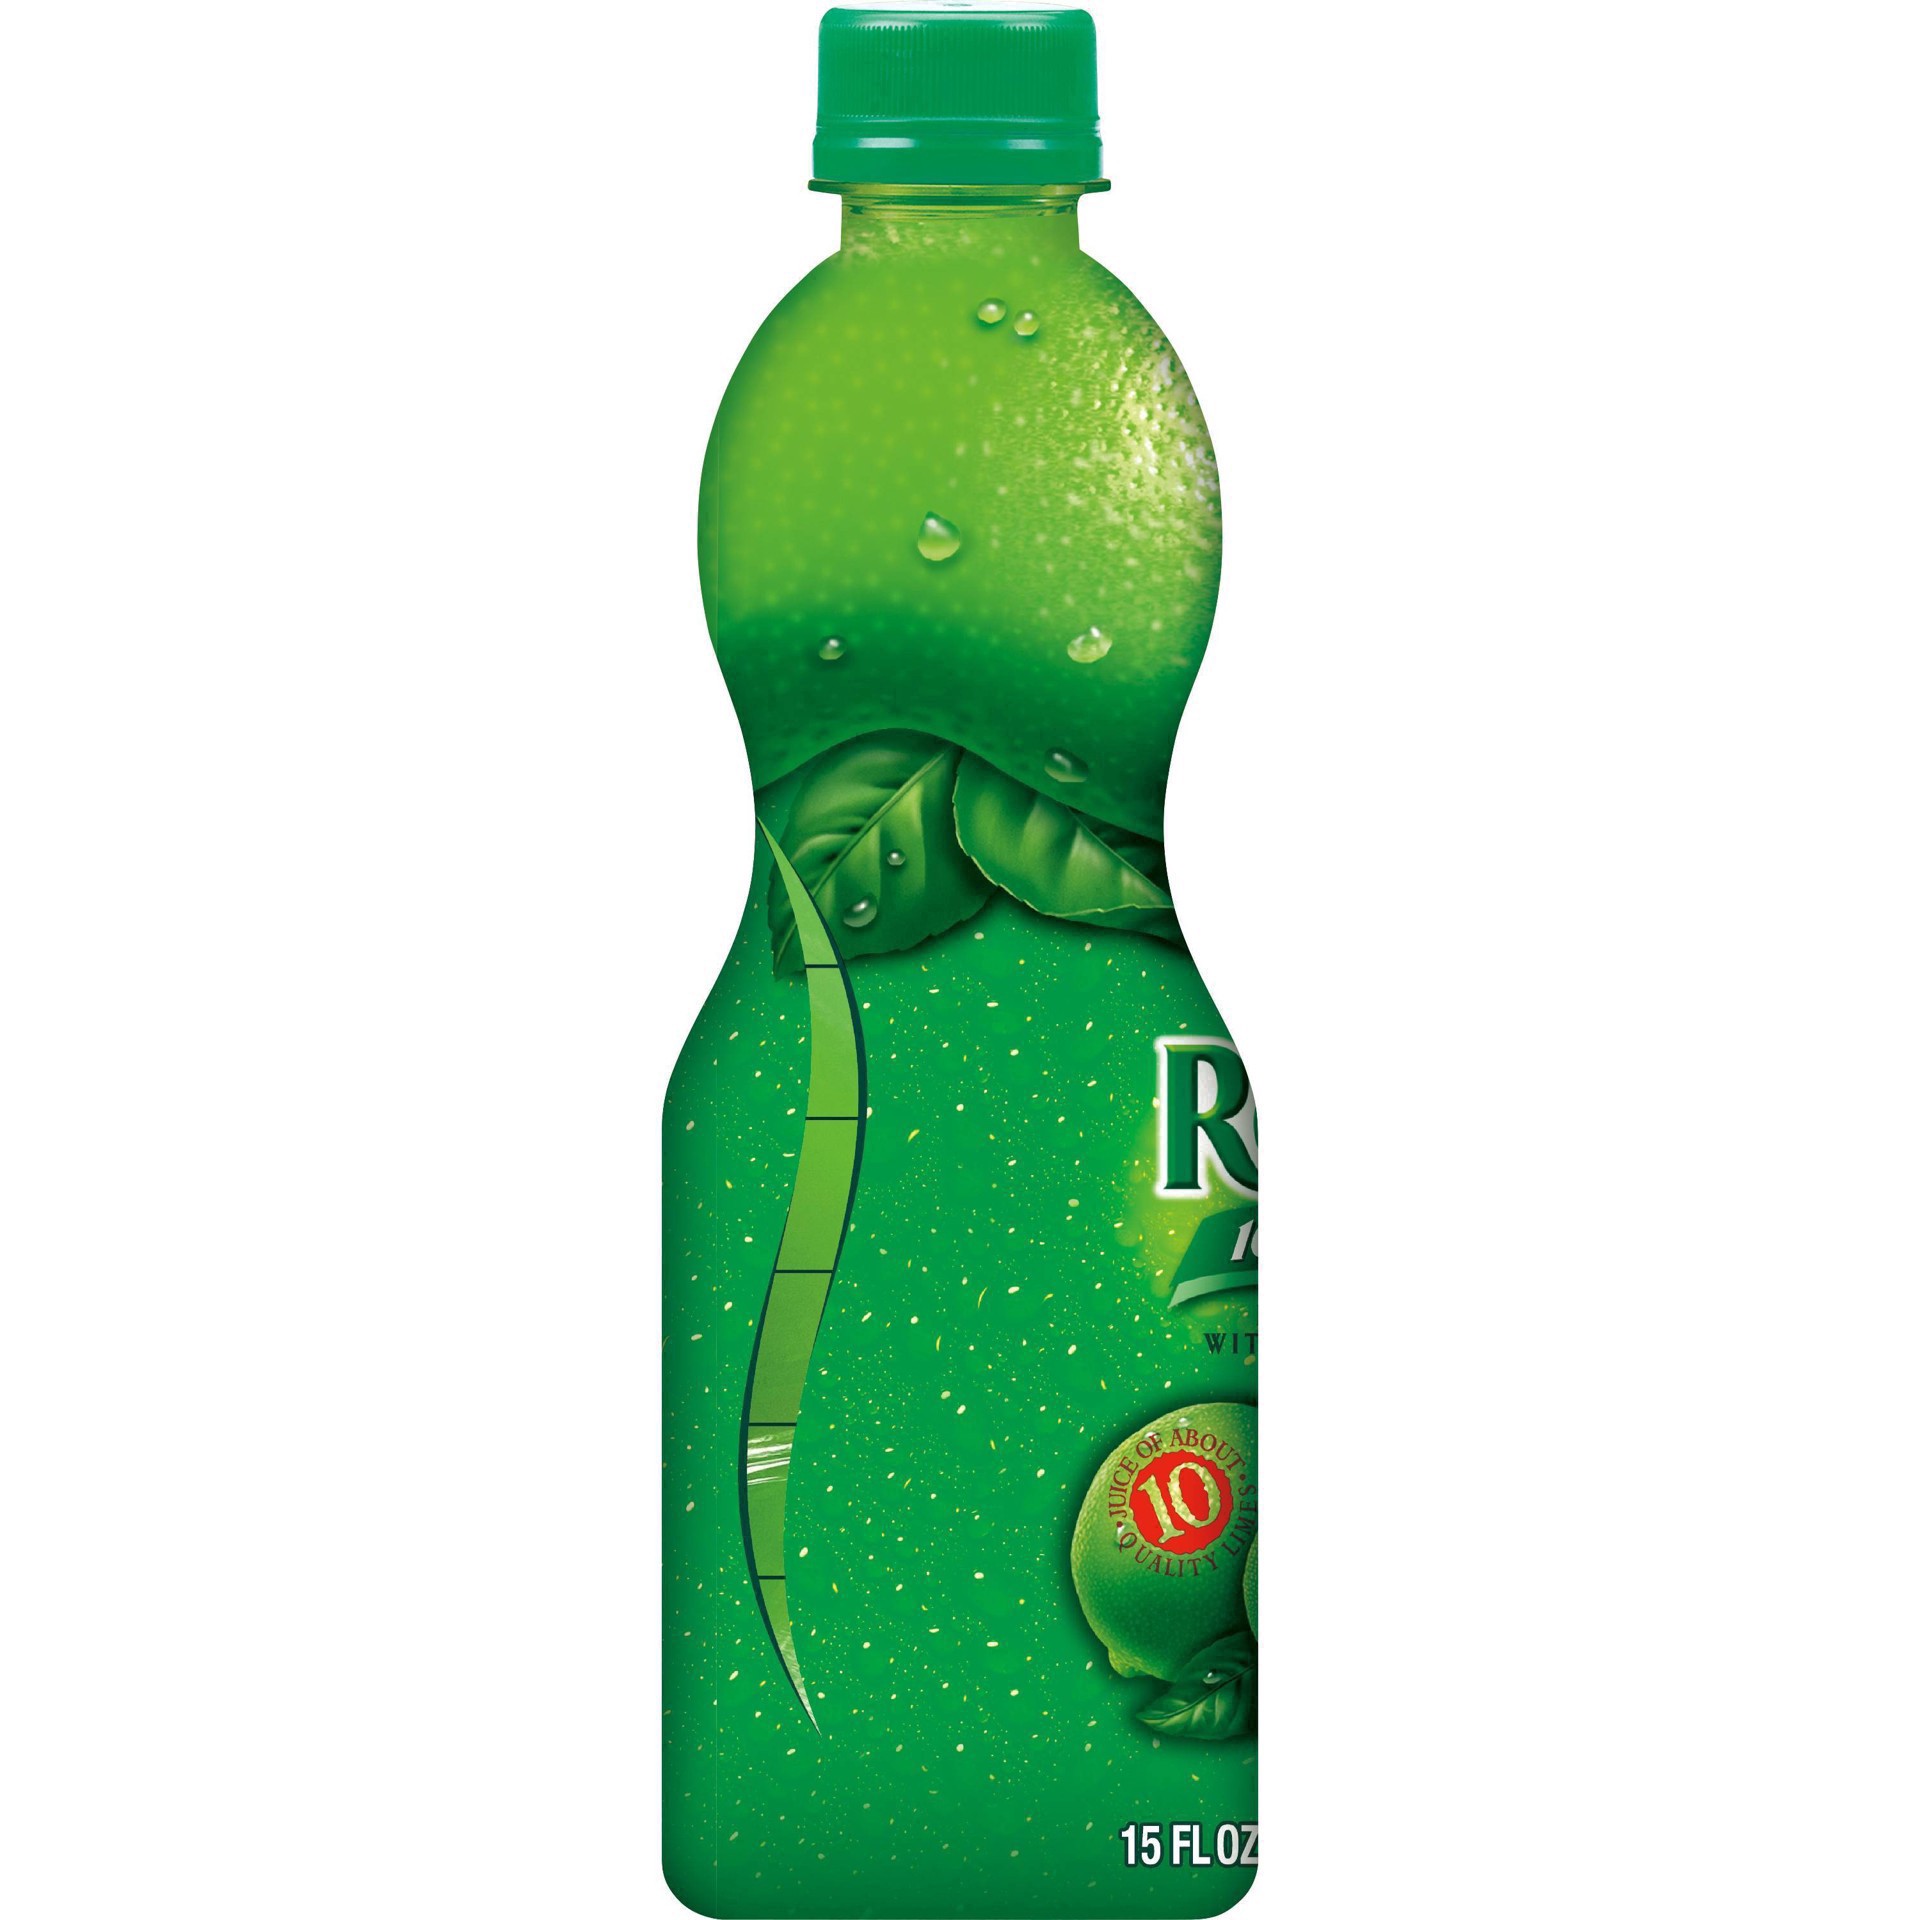 slide 3 of 68, ReaLime 100% Lime Juice Bottle, 15 fl oz